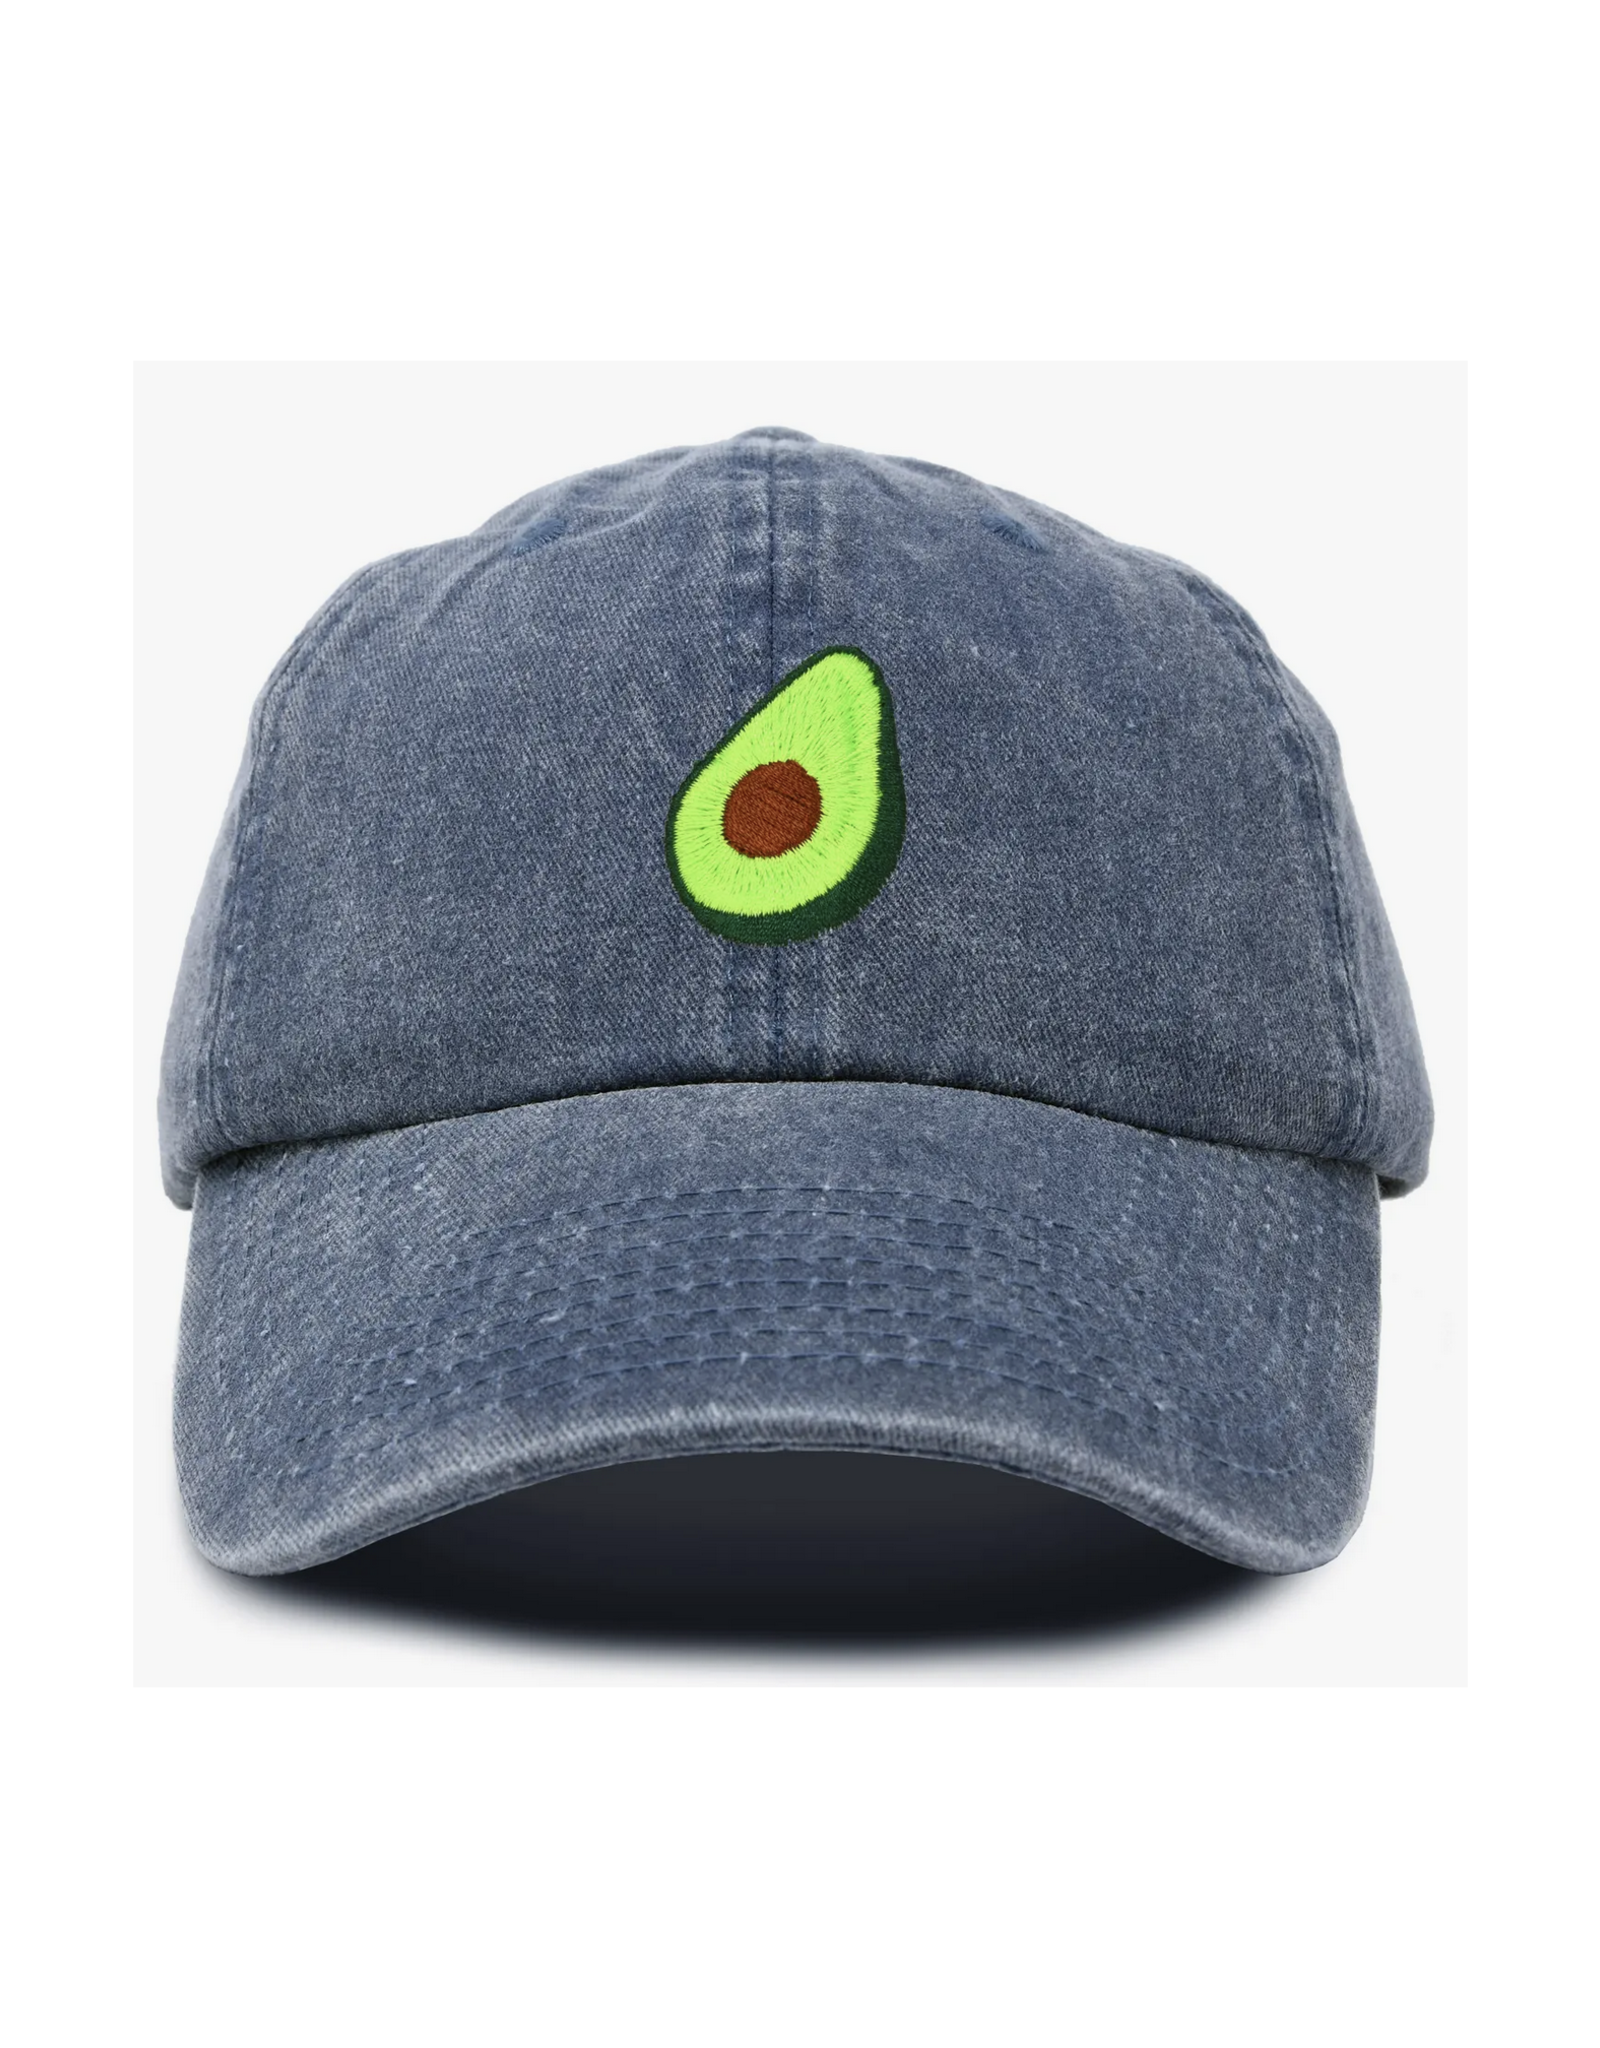 Avocado Dad Hat